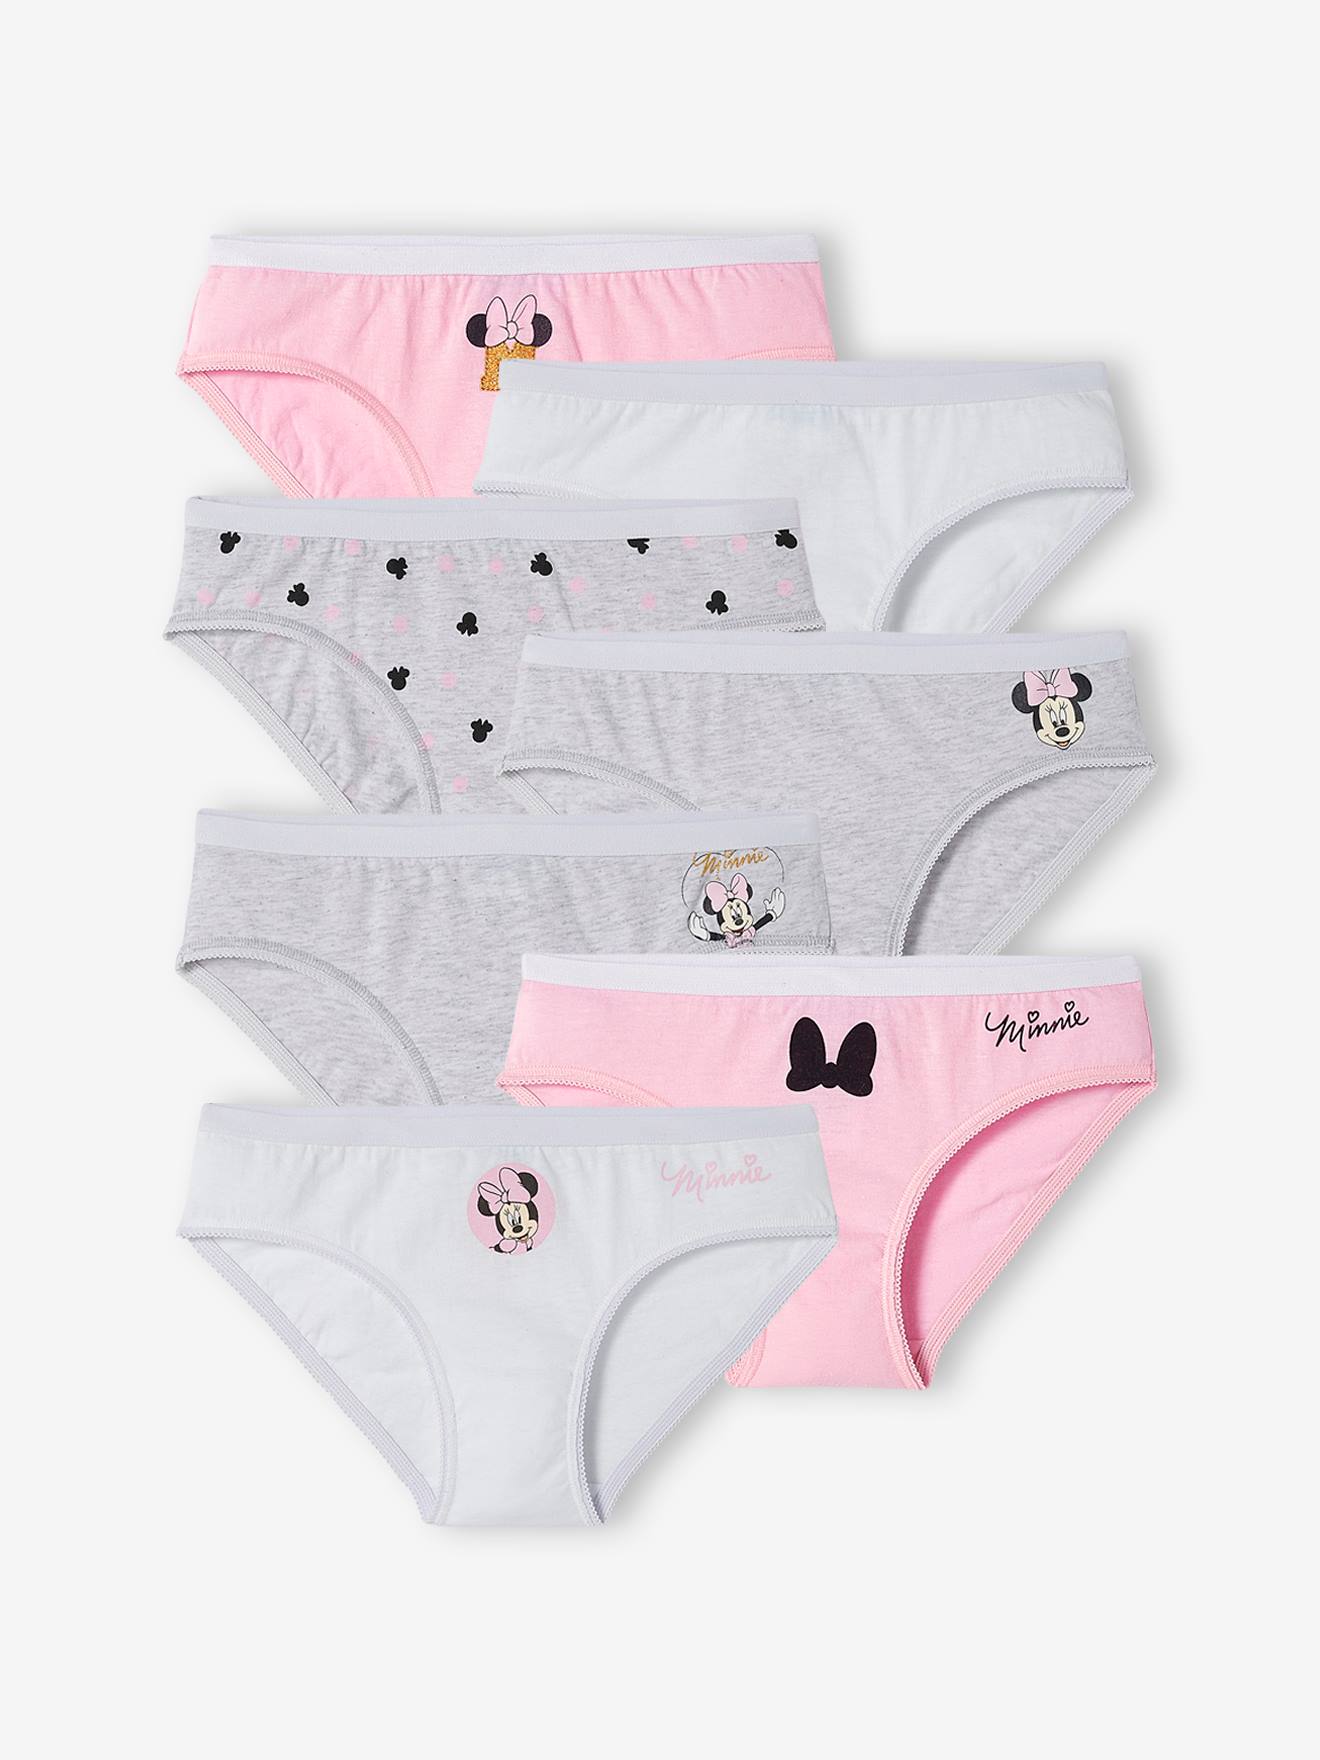 Disney Minnie Mouse Cotton Underwear Briefs 7 Pack Panty Girls